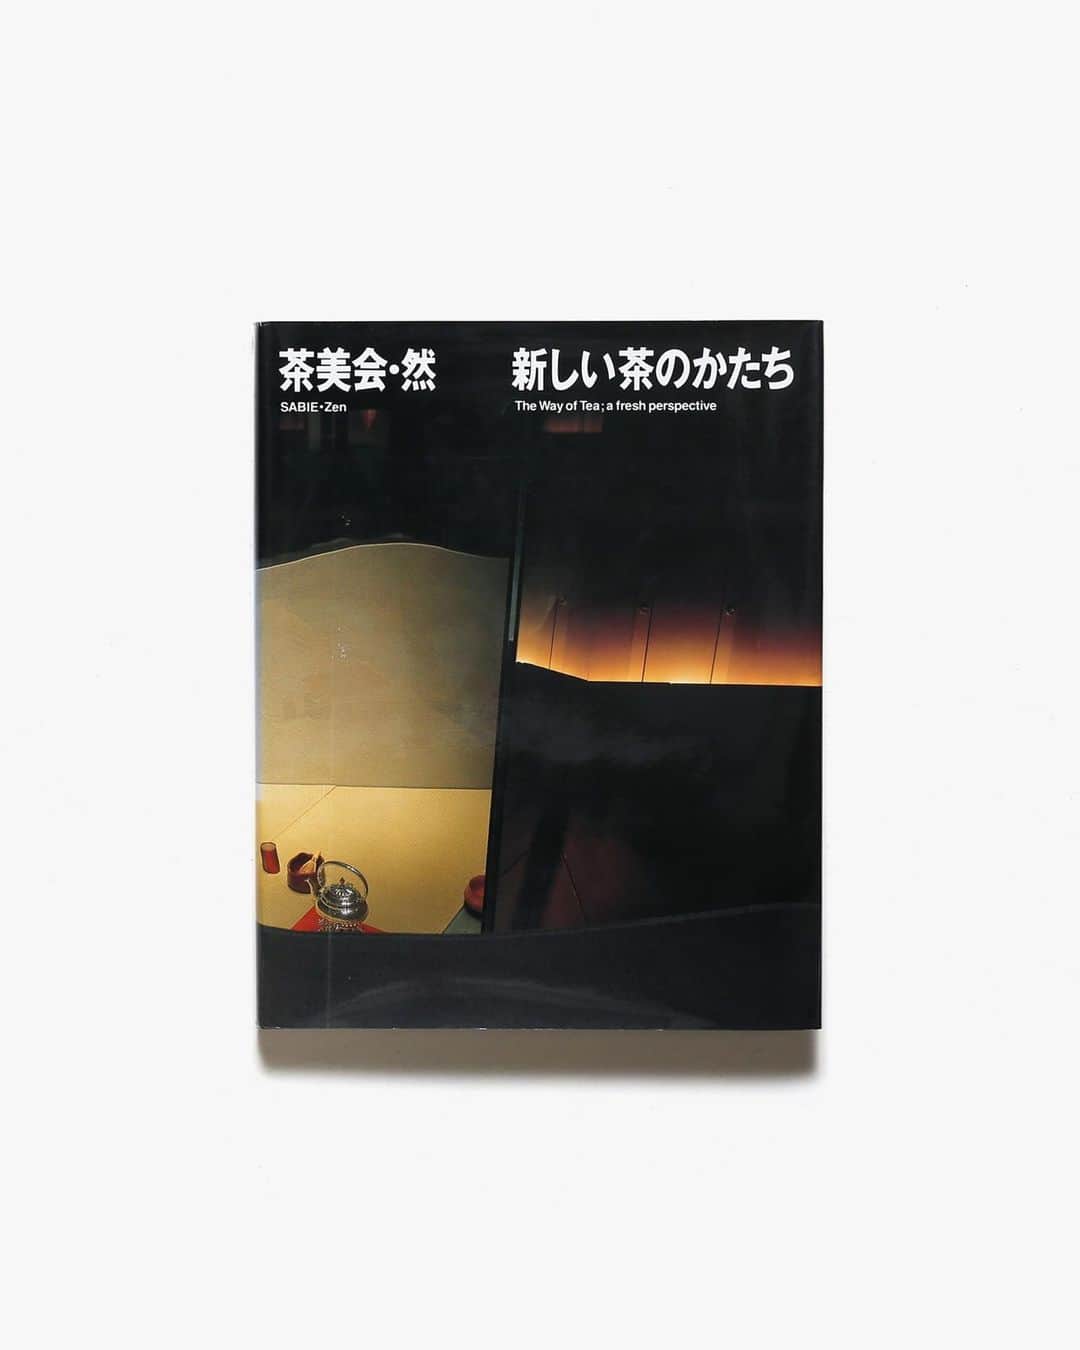 nostos booksさんのインスタグラム写真 - (nostos booksInstagram)「本日はイッタラの写真資料集、伝説の日本料理店の写真集『百味菜々』、多くの芸術家や建築家が参加した『茶美会・然』、『Inui Architects』など41冊を入荷しました。  オンラインストアへは商品タグをタップ◯ 　 入荷本からおすすめ10選  ----------  1冊目 『百味菜々』 1995年まで東京・青山で営まれていた日本料理店「百味存」のオーナー・横山夫紀子と、写真家・秋元茂によるビジュアルブック。丁寧な下拵えから、ルーシー・リーや北大路魯山人の器への盛り付けを美しく撮影したもの。寄稿は高橋睦郎、三宅一生ら、構成・造本は田中一光。   ----------  2冊目 『iittala』 フィンランドの伝説的なプロダクトデザインブランド、イッタラのおよそ140年にわたる歴史と記録をまとめた写真資料集。北欧の美学やフィンランドの文化、政治、歴史と深く結びつくイッタラ初のモノグラフで、様々なプロダクトを種類ごとに紹介。アイノとアルヴァ・アアルト、カイ・フランク、ジャスパー・モリソン、三宅一生スタジオなど著名デザイナーの作品にも焦点を当てている。  ----------  3冊目 『茶美会・然 新しい茶のかたち』 1992年に開催された茶道裏千家の伊住政和主宰の茶美会（さびえ）・然についてまとめた写真資料集。グラフィックデザイナーの田中一光をはじめとし、三宅一生、コシノジュンコ、横尾忠則など多くのアーティストや建築家が参画・出品した。参加したアーティストたちによるテキストや対談も収録。  ----------  4冊目 『Spoon』 著者のダニエル・ロゼンシュトロフの個人コレクションから数百本のスプーンを紹介する写真資料集。木やガラス、骨、金属、磁器、エナメル、セラミック製のスプーンからヴィンテージスプーン、博物館所蔵の貴重な一点物、世界中の家庭で見られる日常生活の中の典型的なスプーンまで、数年にわたり収集されたスプーンを紹介。   ----------  5冊目 『リバティ アーカイブ・ブック』 リバティプリントで有名なロンドンのリバティ社による貴重なデザイン・写真資料集。1875年の創業から現在に至るまで、多彩なテキスタイルデザインやプリントを生み出してきたリバティのデザイナーやプリンター、芸術運動の背後にある物語を探ることができる一冊。   ----------  6冊目 『Inui Architects 乾久美子建築設計事務所の仕事』 建築家・乾久美子の作品集。東日本大震災で被災した岩手県・唐丹の小中学校と児童館の再建、みずのき美術館、個人の邸宅など場所も役割も異なる多種多様な設計を紹介。写真や模型、設計図、スケッチなど図版も豊富に掲載。装丁は菊地敦己。   ----------  7冊目 『日経回廊 全10冊揃』 日本経済新聞社が購読者向けに発行していた非売品の雑誌『日経回廊』の全巻10冊揃え。毎号魅力的なテーマを新鮮な切り口で特集する。  ----------  8冊目 『いす・100のかたち』 1996年から2000年にかけて各国て開催された展示会「いす・100のかたち ヴィトラ・デザイン・ミュージアムの名品」の図録。マルセル・ブロイヤー、チャールズ・イームズ、ジャスパー・モリスン、イサム・ノグチ、エットーレ・ソットサス、柳宗理をはじめとする多数の作家らが手がけた美しい椅子の数々を収録。  ----------  9冊目 『四国のおもちゃ』 四国の郷土玩具を紹介した資料集。「相撲はりこ」「阿波大津人形」「松山土天神」など、郷土愛あふれる個性豊かなおもちゃを写真と解説で紹介。装丁は芹沢銈介によるもの。   ----------  10冊目 『Leaked Recipes: The Cookbook』 過去15年間に流出した主要な電子メールを、料理というテーマでまとめたレシピ集。朝食、ディップ、メインディッシュ、サイドディッシュ、デザートなど、50以上のレシピを紹介。ヒラリー・クリントンからエマニュエル・マクロンまで様々な情報源から流出したメールを、オフィスカルチャー、政治、家族、友人関係など様々な側面からの考察し、エミリー・バルツの写真が添えられている。  ----------------------  店舗情報はこちら @nostosbooks  ----------------------  オンラインストアは毎日19時更新○  ----------------------  #nostosbooks #ノストスブックス #祖師ヶ谷大蔵 #砧」6月22日 8時34分 - nostosbooks